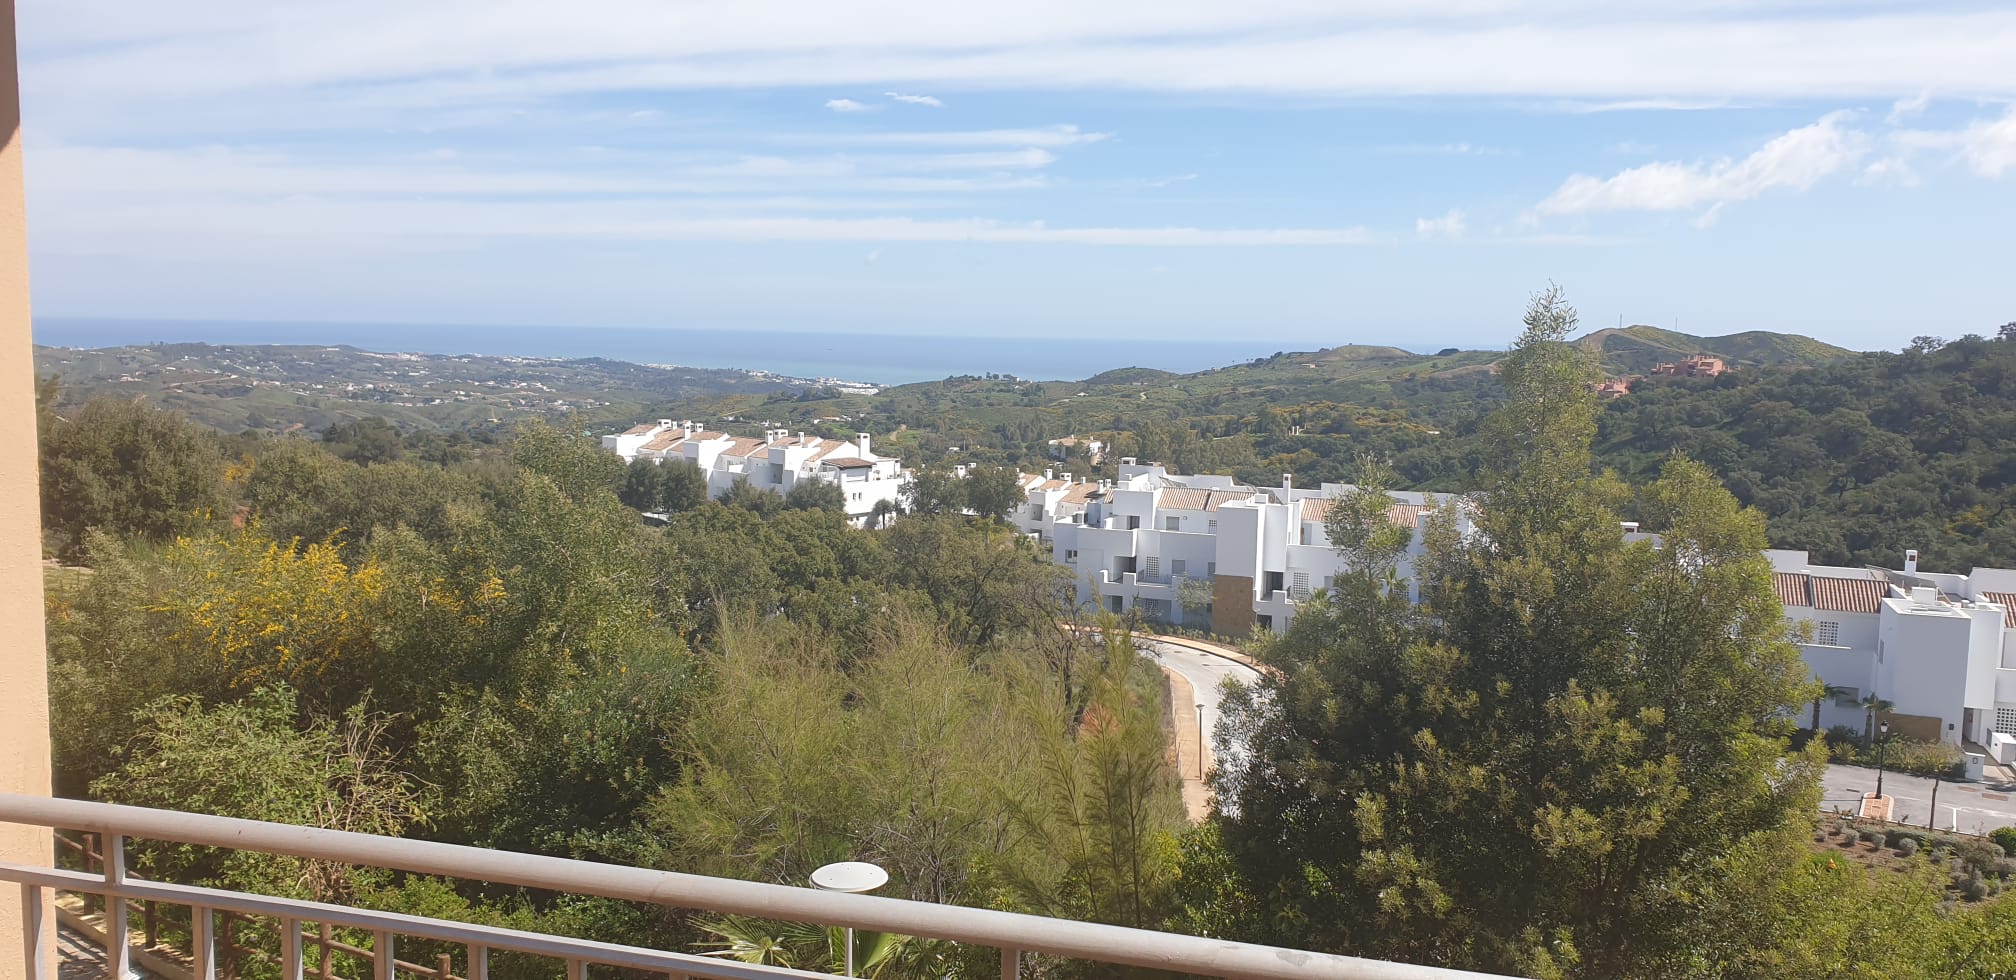 Adosado de 3 dormitorios en Elviria (Marbella) en alquiler - mibgroup.es